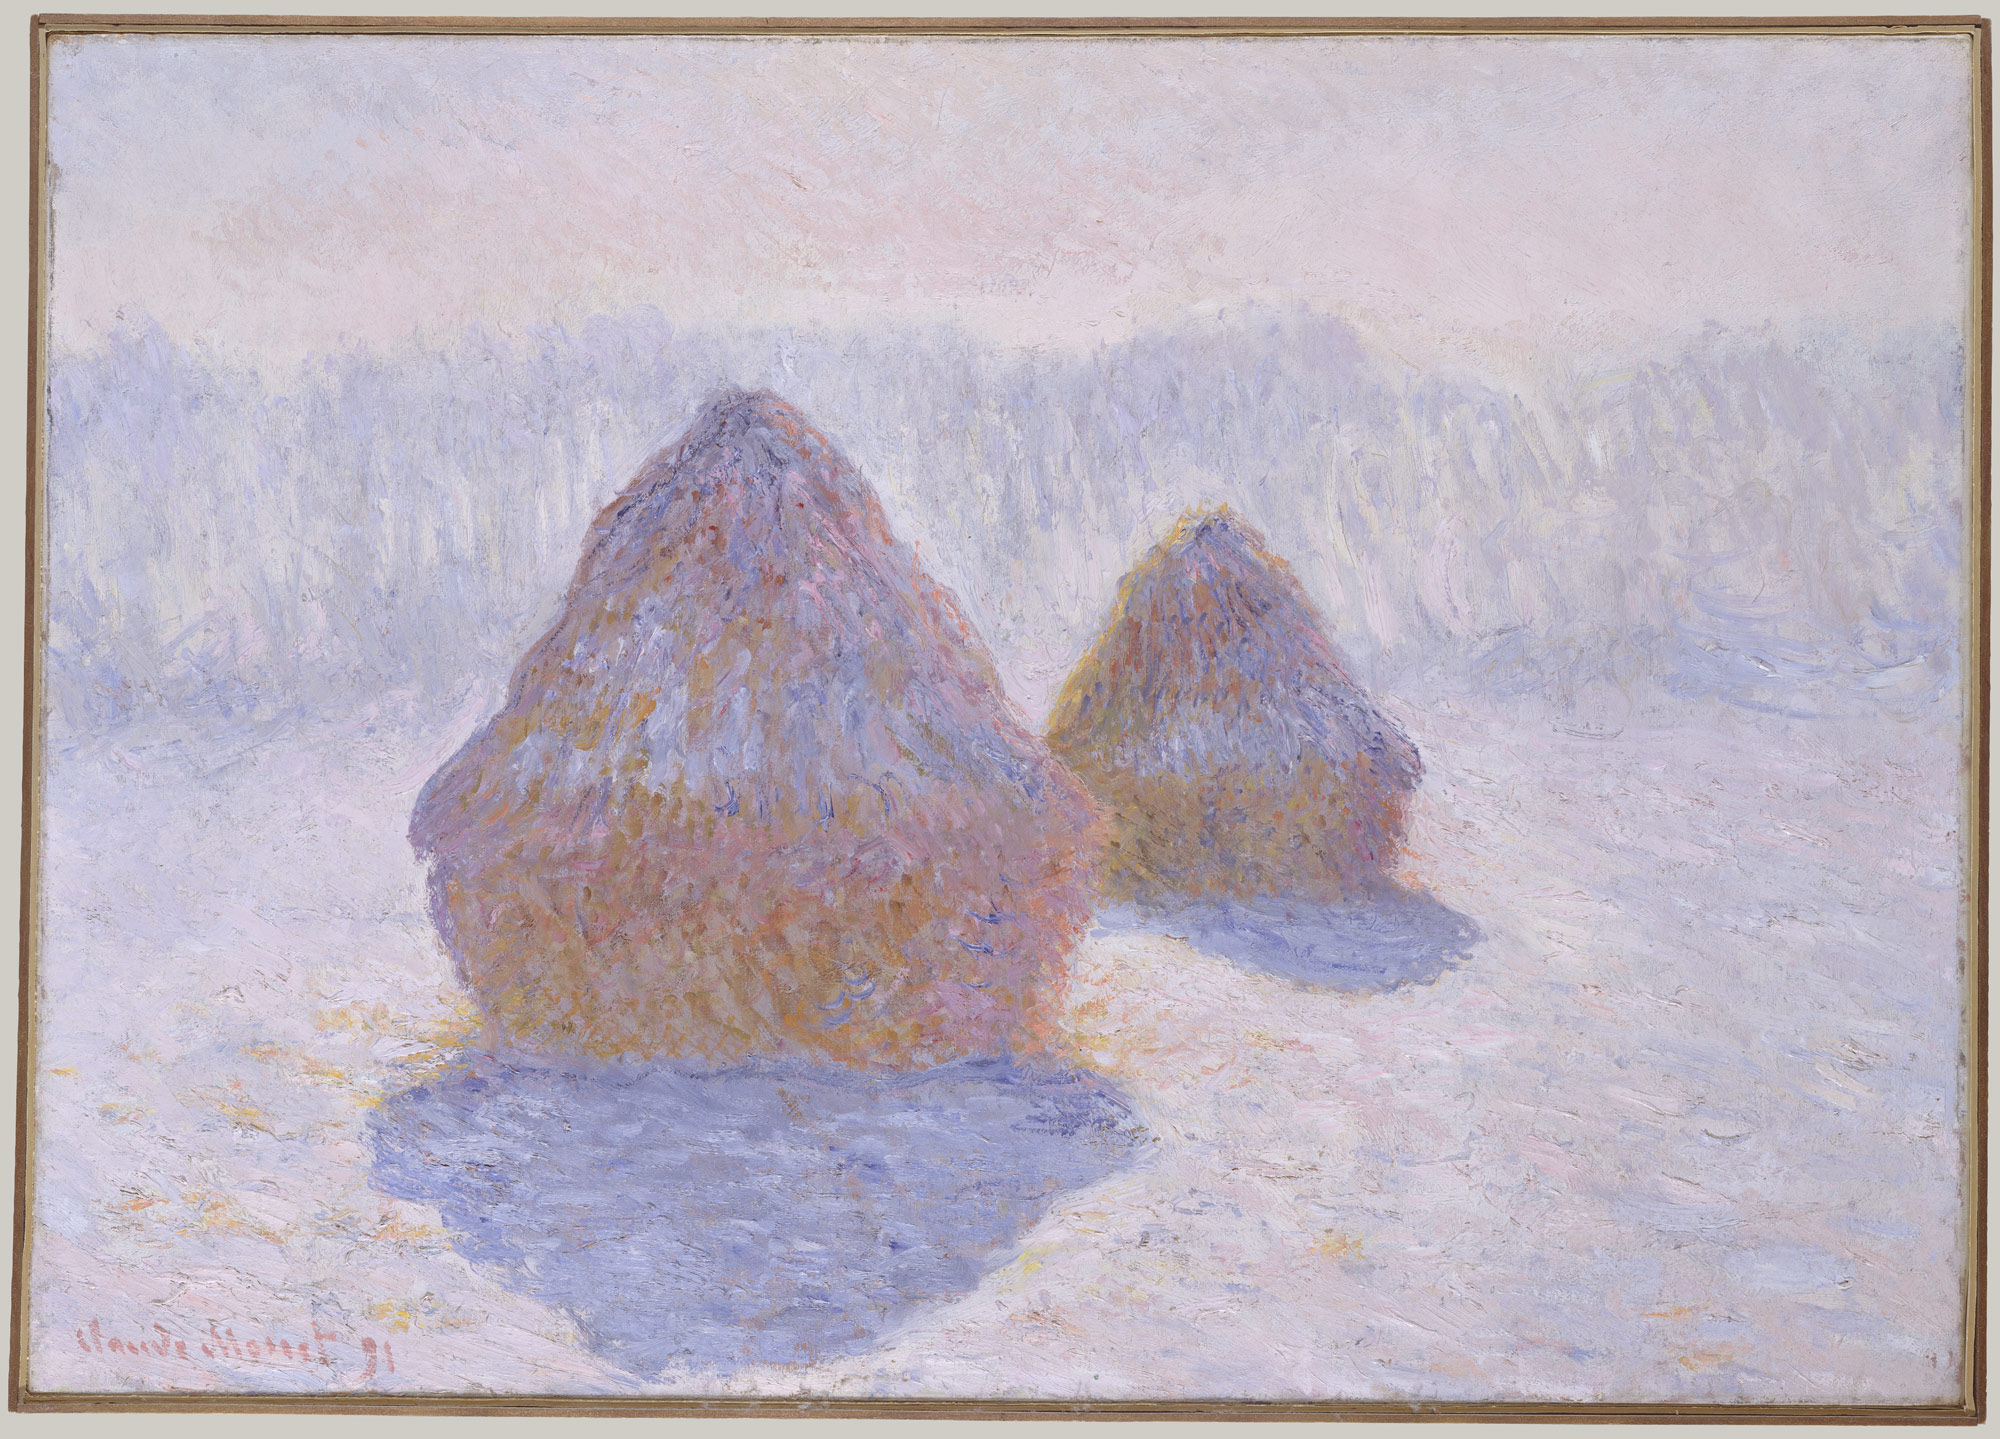 کومه های علف خشک (اثر برف و خورشید) by Claude Monet - 1891 - 65.4 x 92.1 cm 